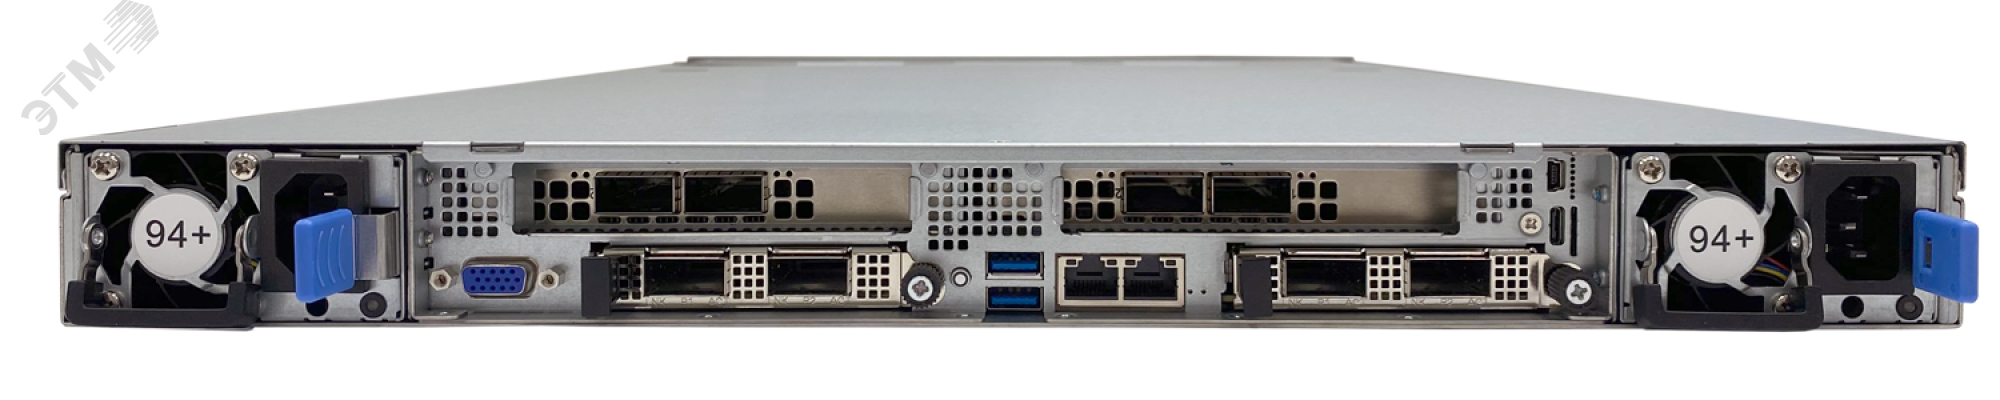 Сервер для предприятий и ЦОД D120AC 1U, Xeon Scalable v3, до 20 накопителей, ОЗУ до 8 ТБ DDR4 T50 D120AC Aquarius - превью 4